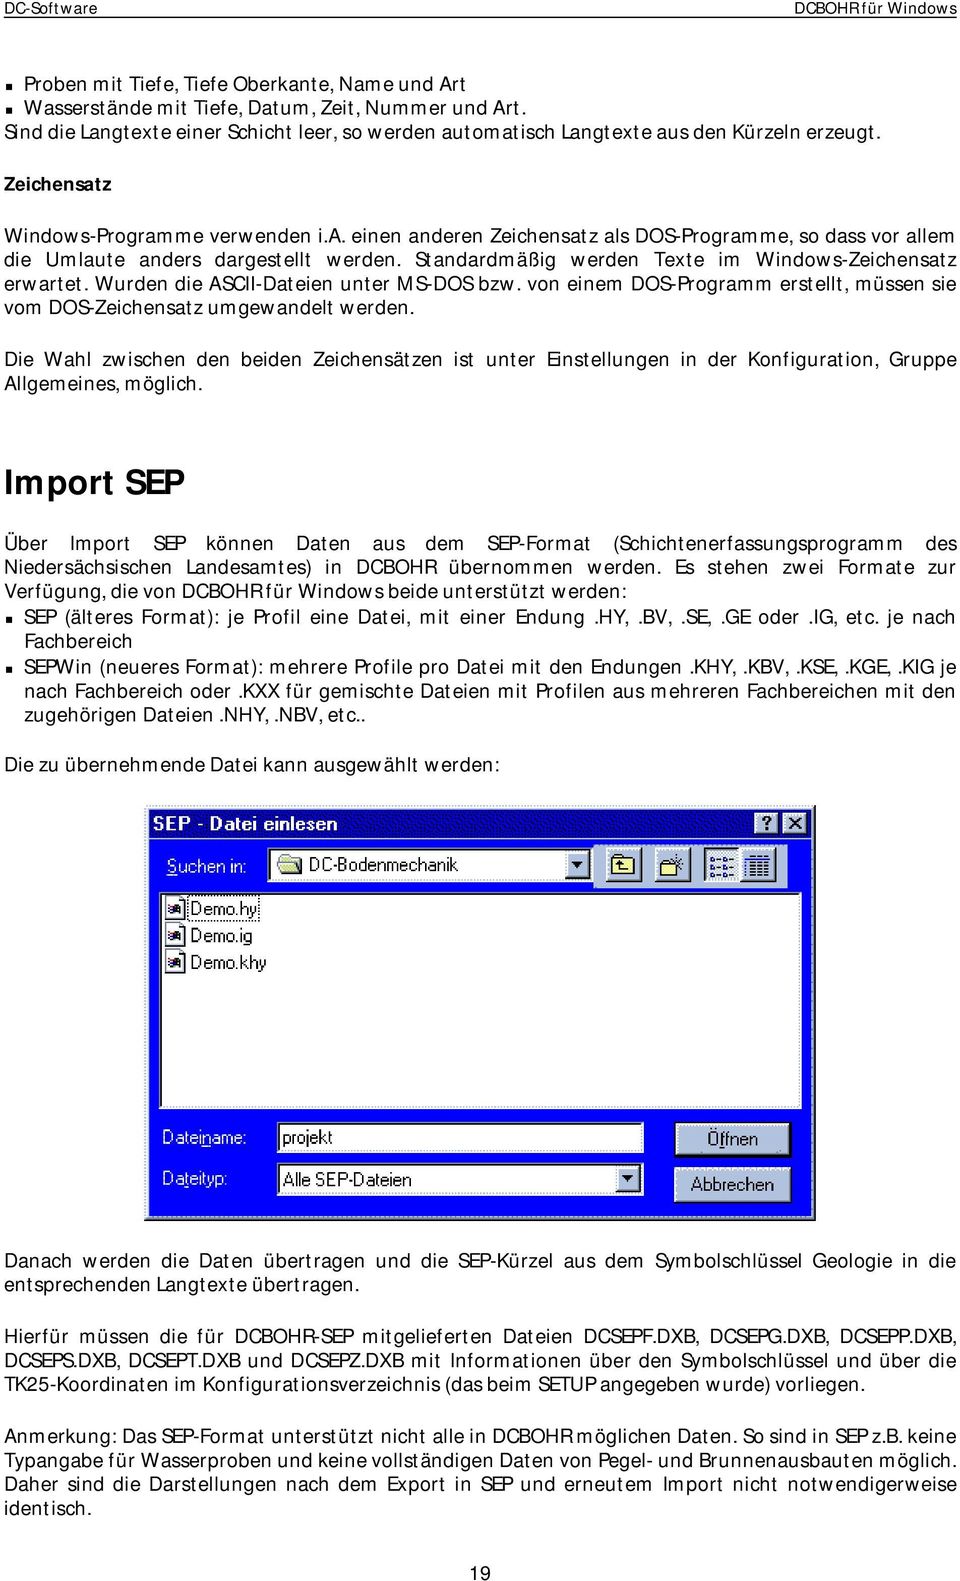 Standardmäßig werden Texte im Windows-Zeichensatz erwartet. Wurden die ASCII-Dateien unter MS-DOS bzw. von einem DOS-Programm erstellt, müssen sie vom DOS-Zeichensatz umgewandelt werden.